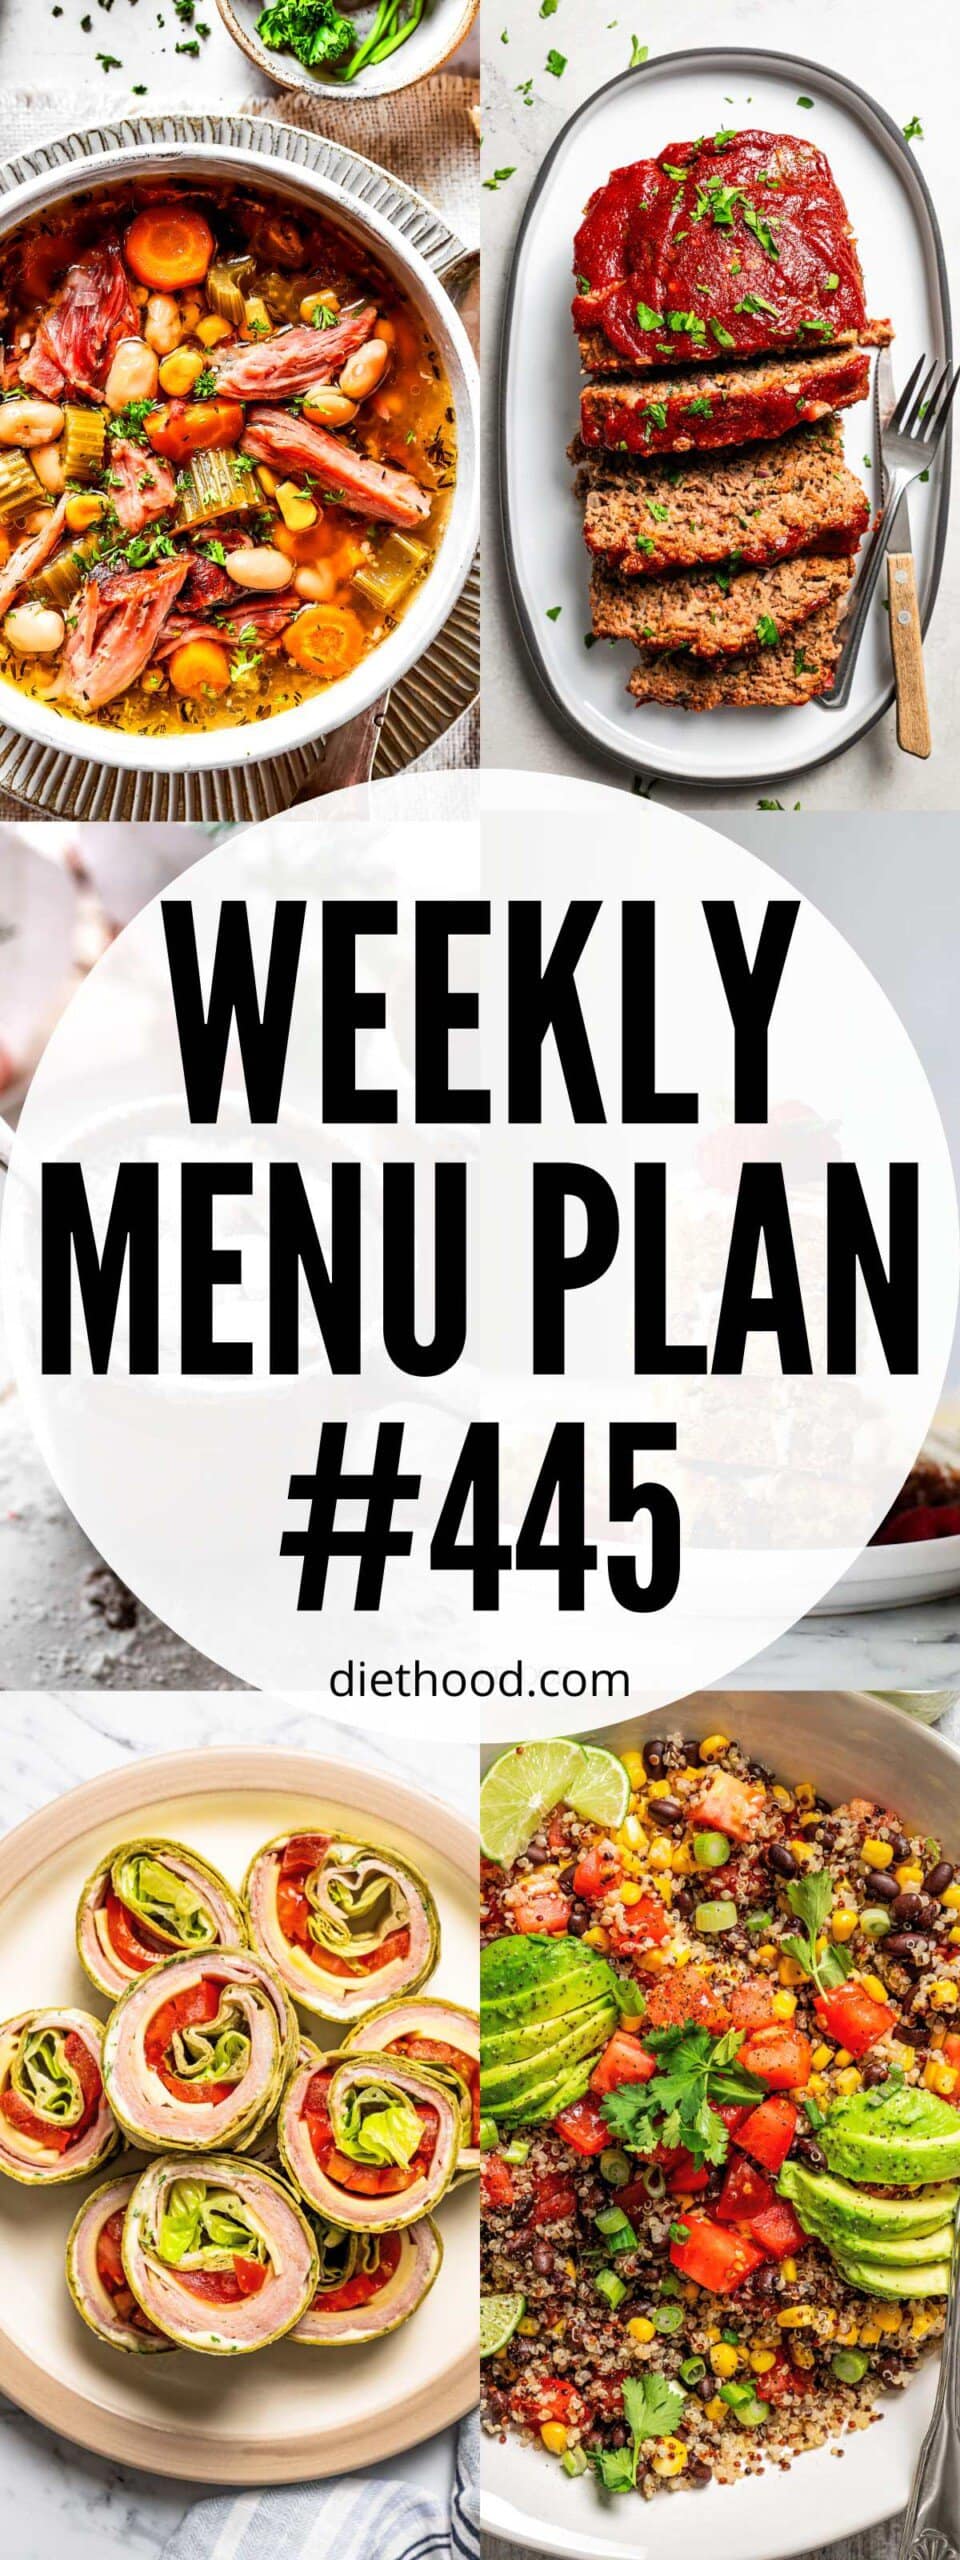 Weekly Menu Plan 445 six image collage Pinterest image.